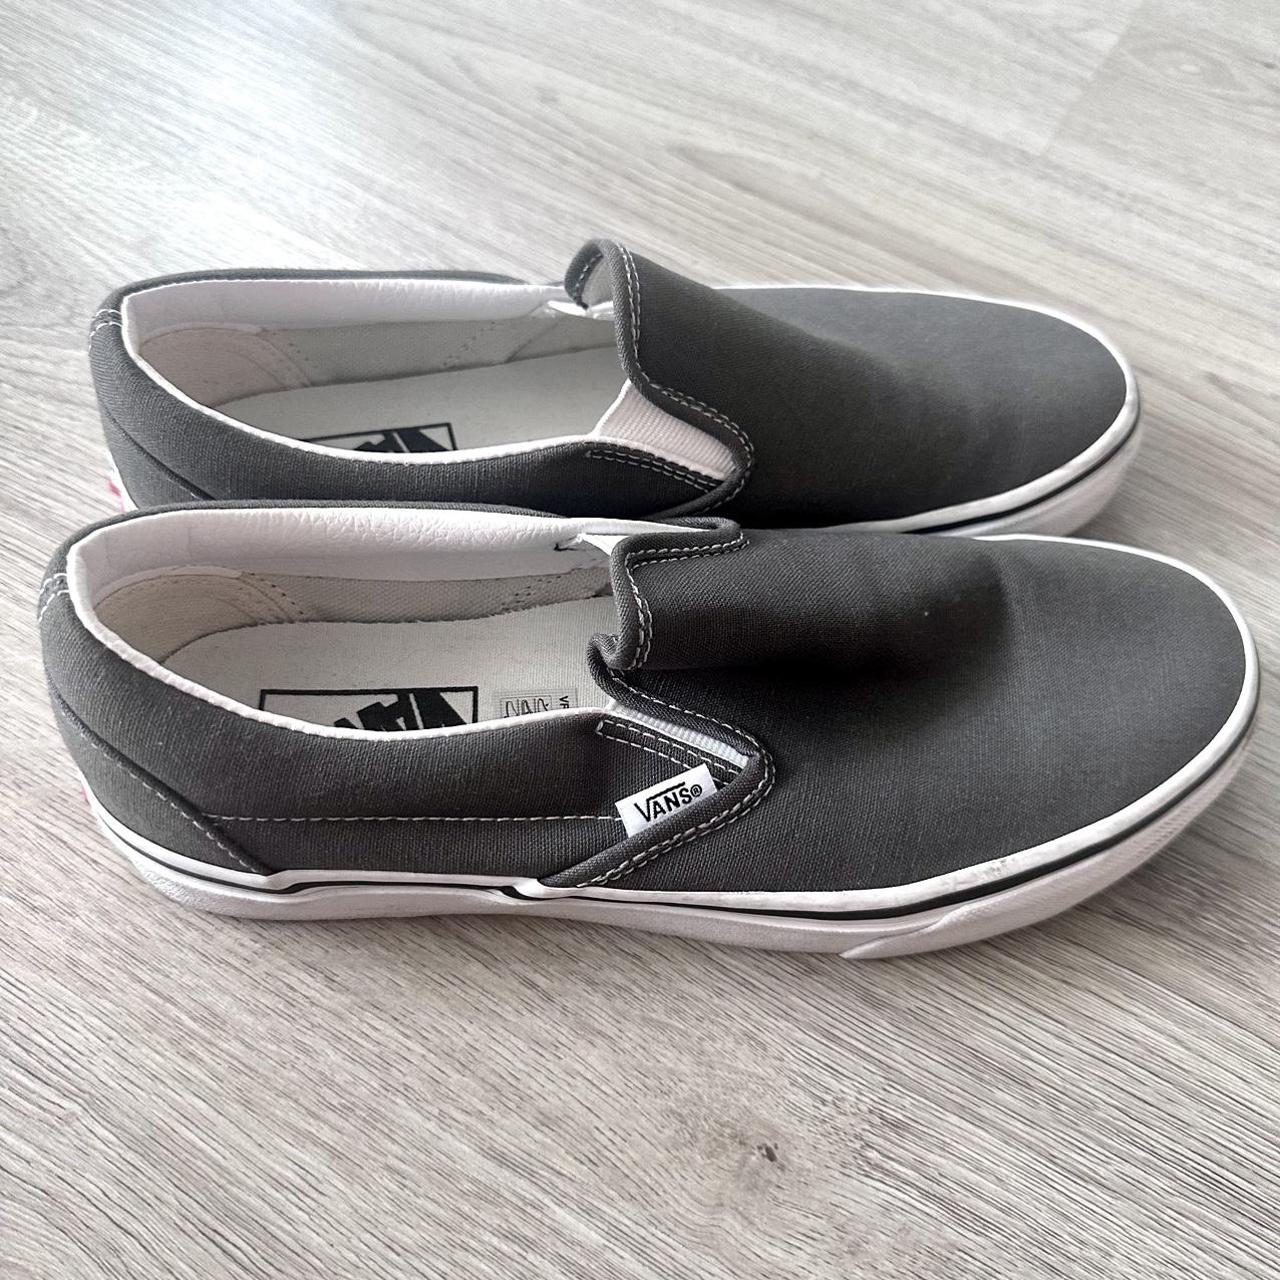 Vans Women's Grey and White Footwear | Depop